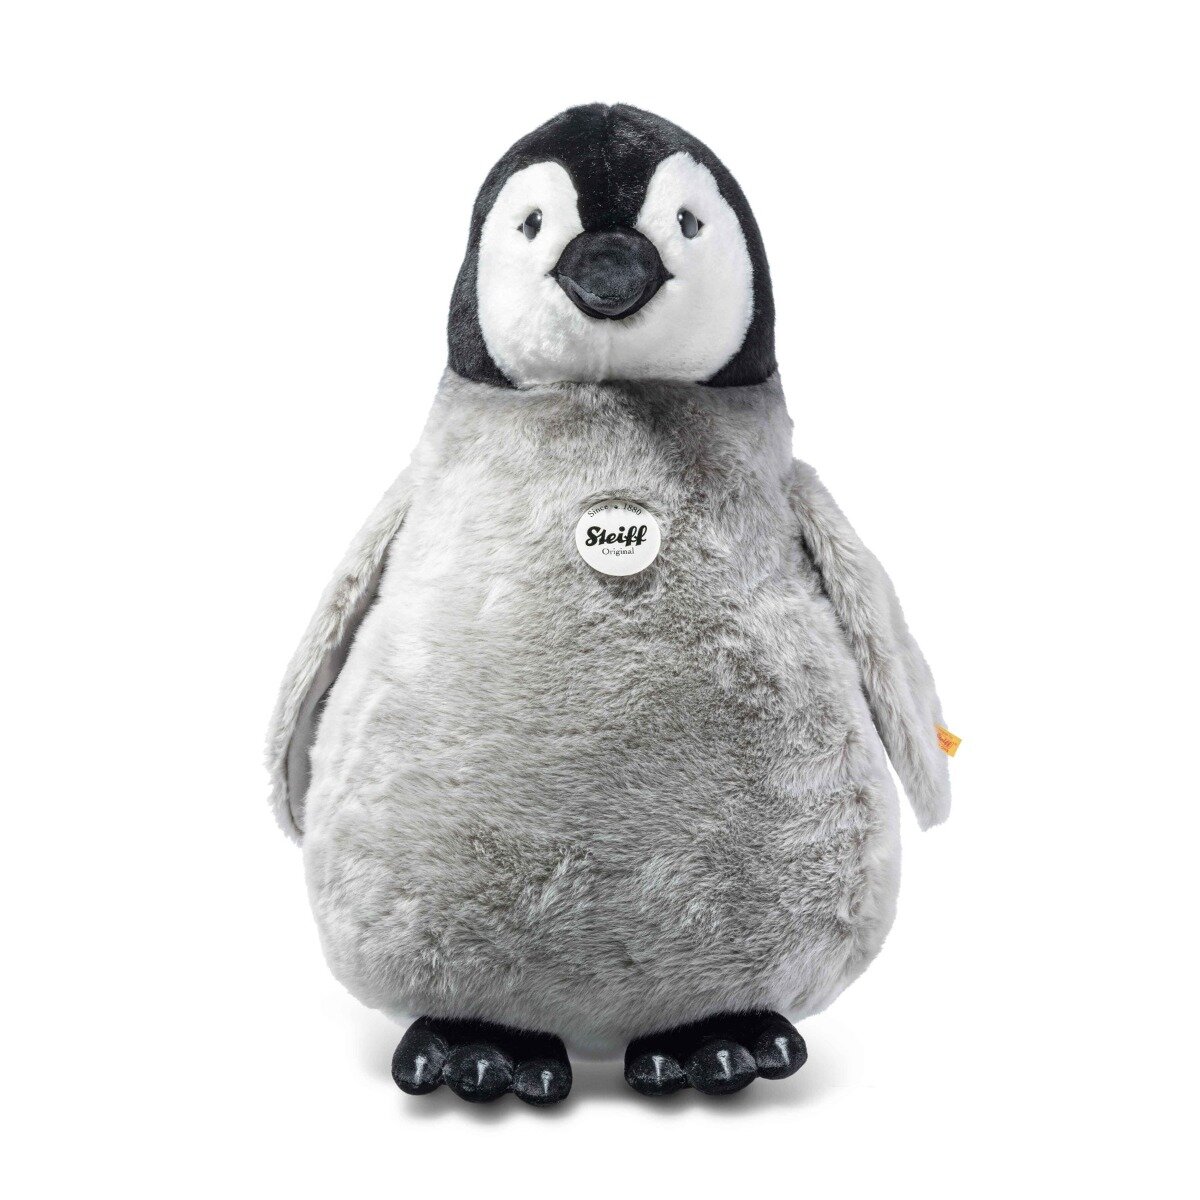 Мягкая игрушка Steiff Flaps penguin (Штайф пингвин Флапс 60 см)